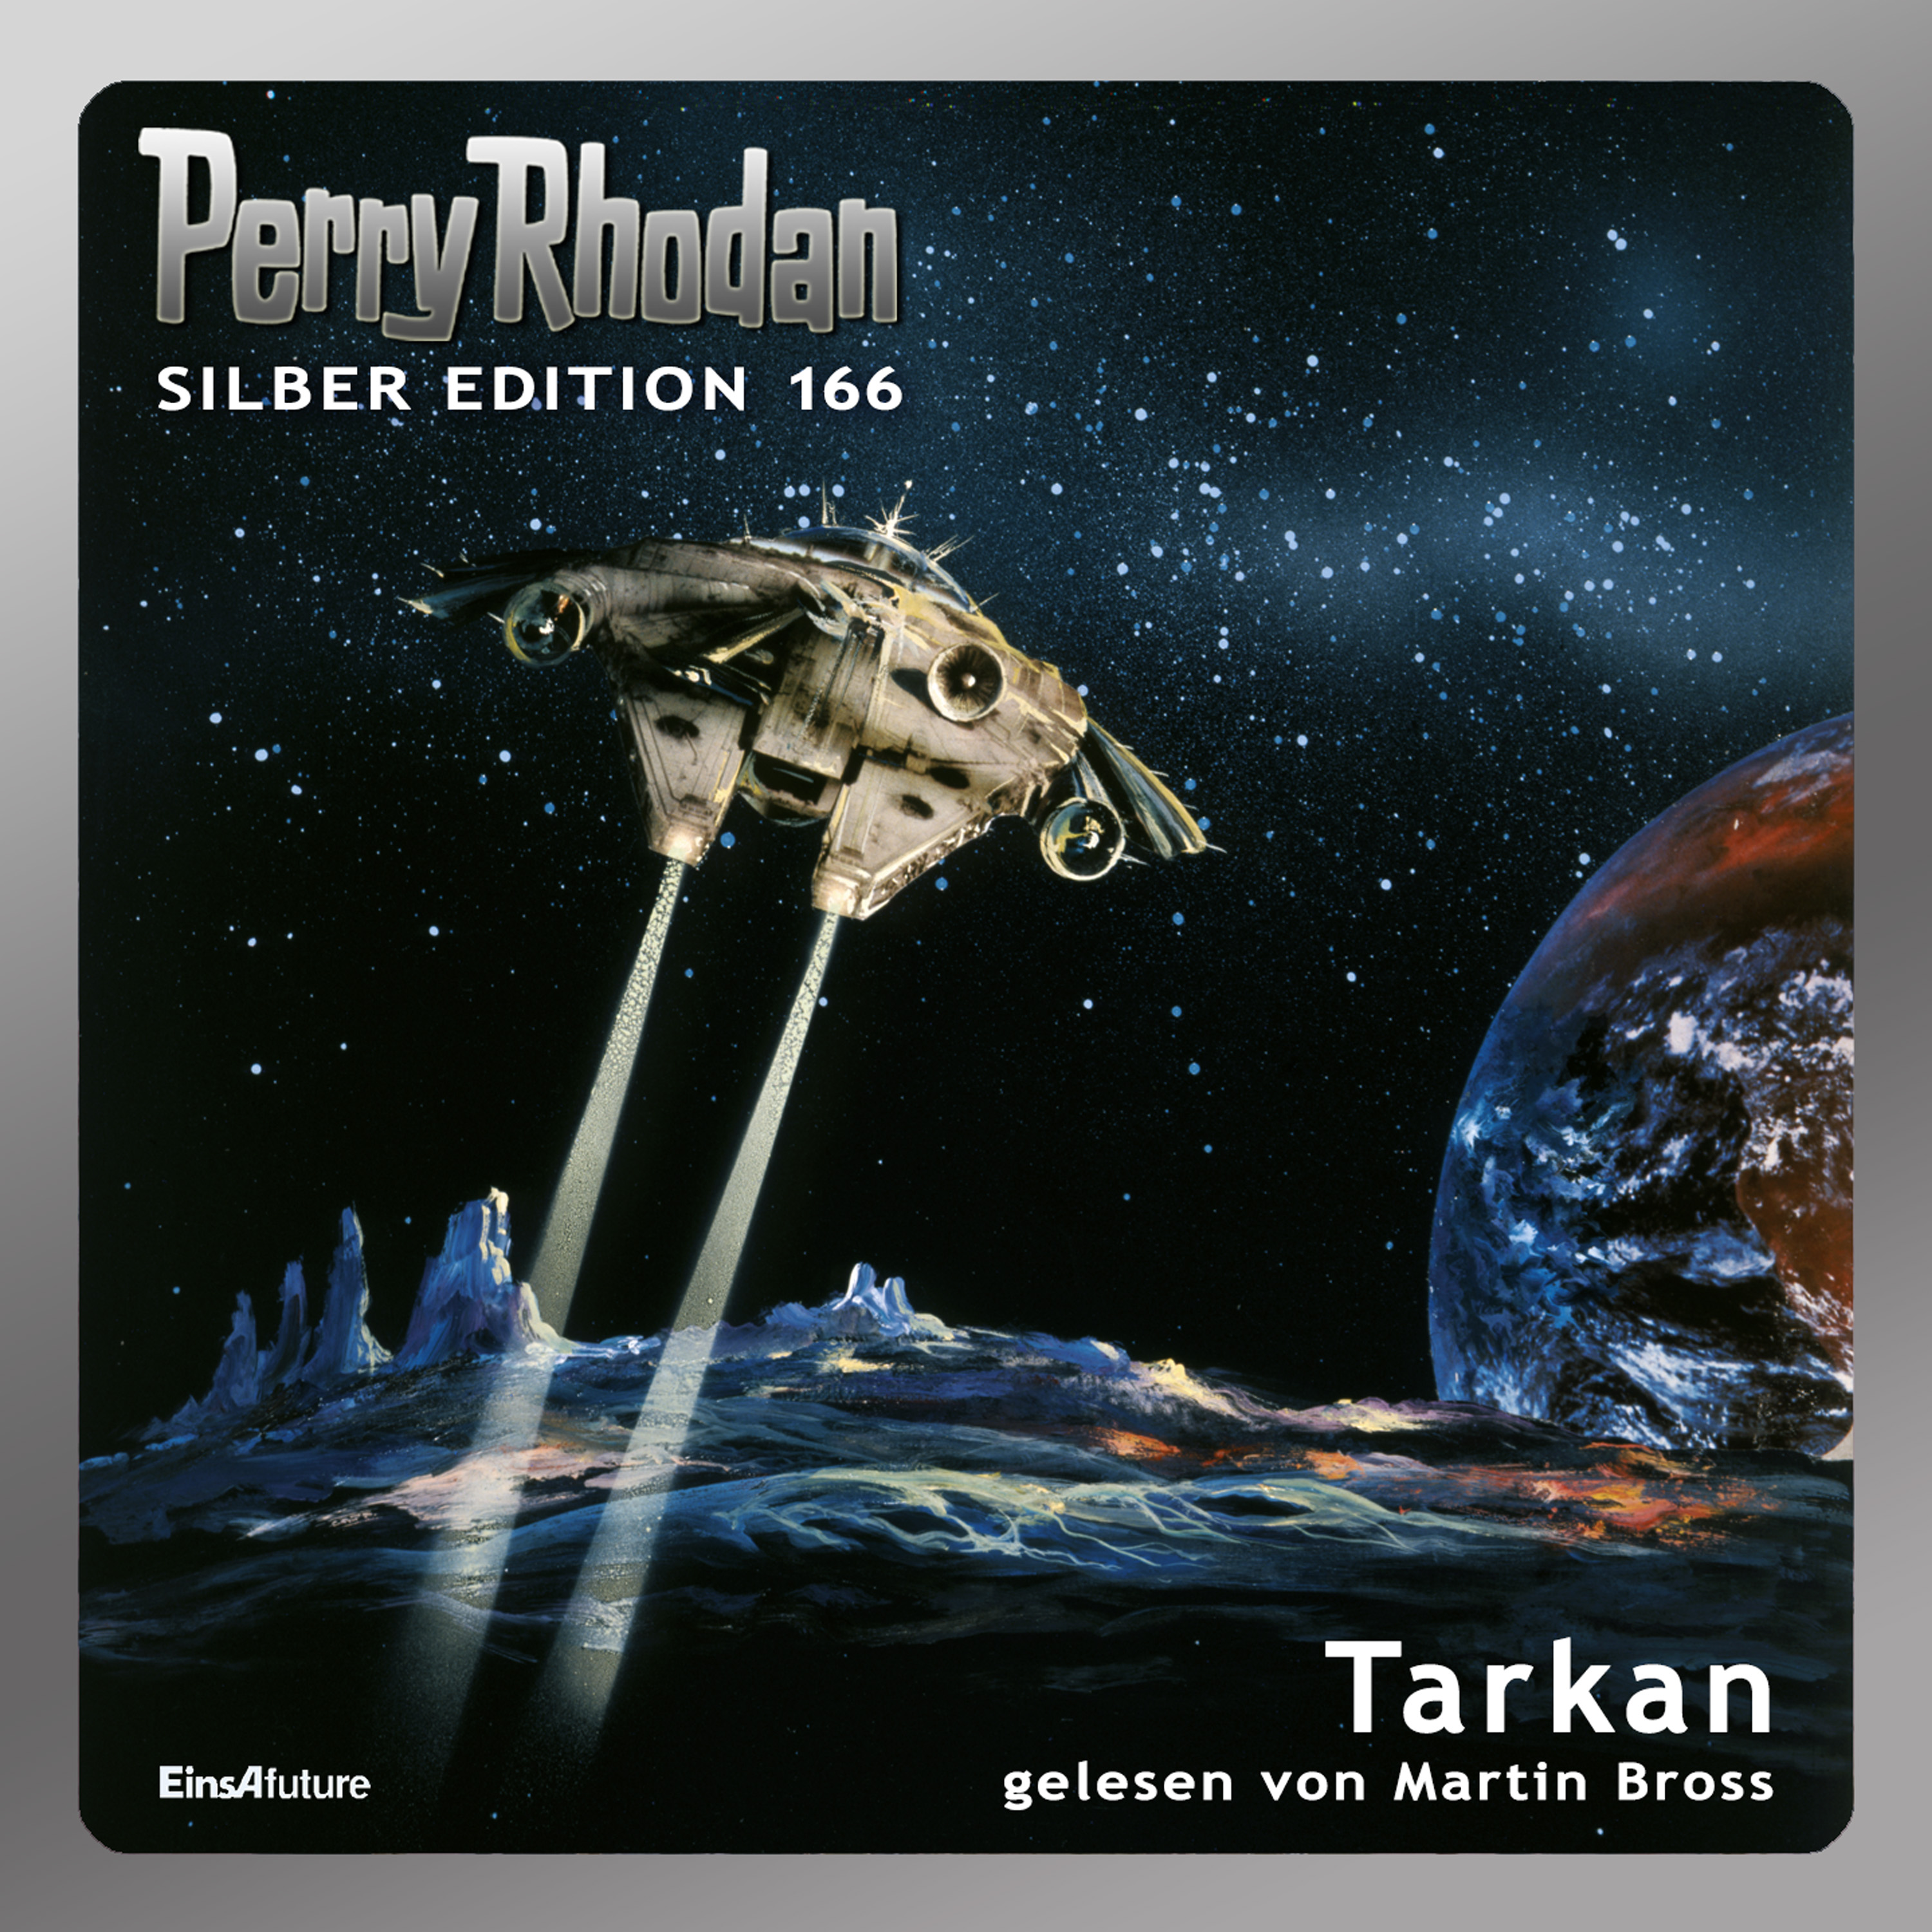 Perry Rhodan Silber Edition 166: Tarkan (Hörbuch-Komplett-Download)